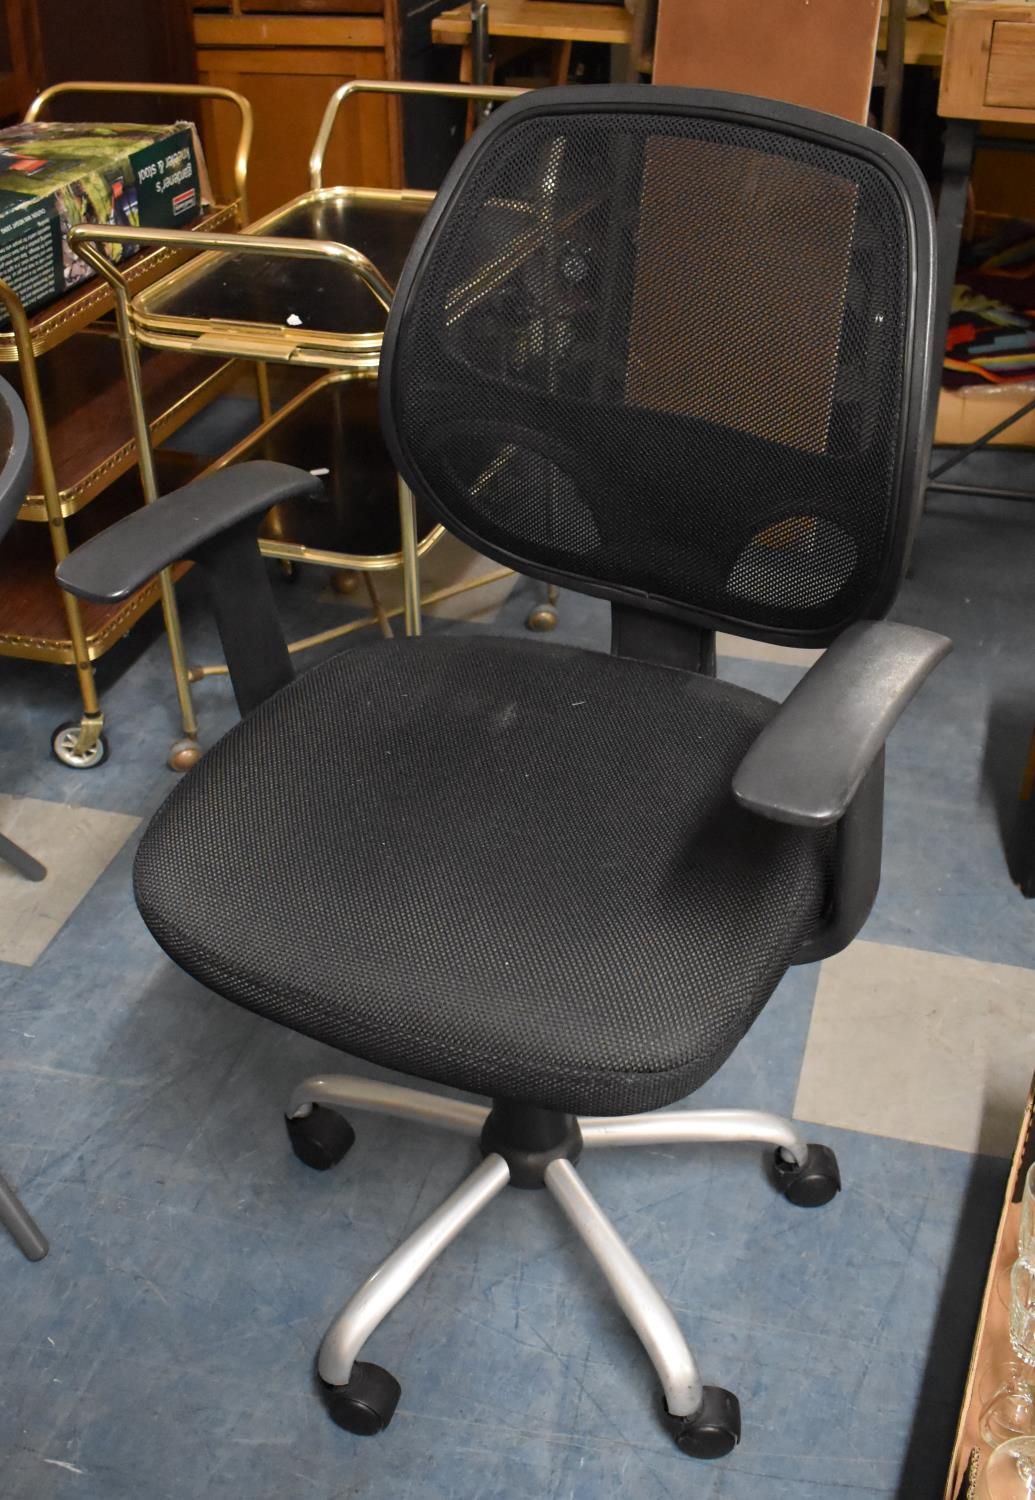 A Modern Swivel Office Chair